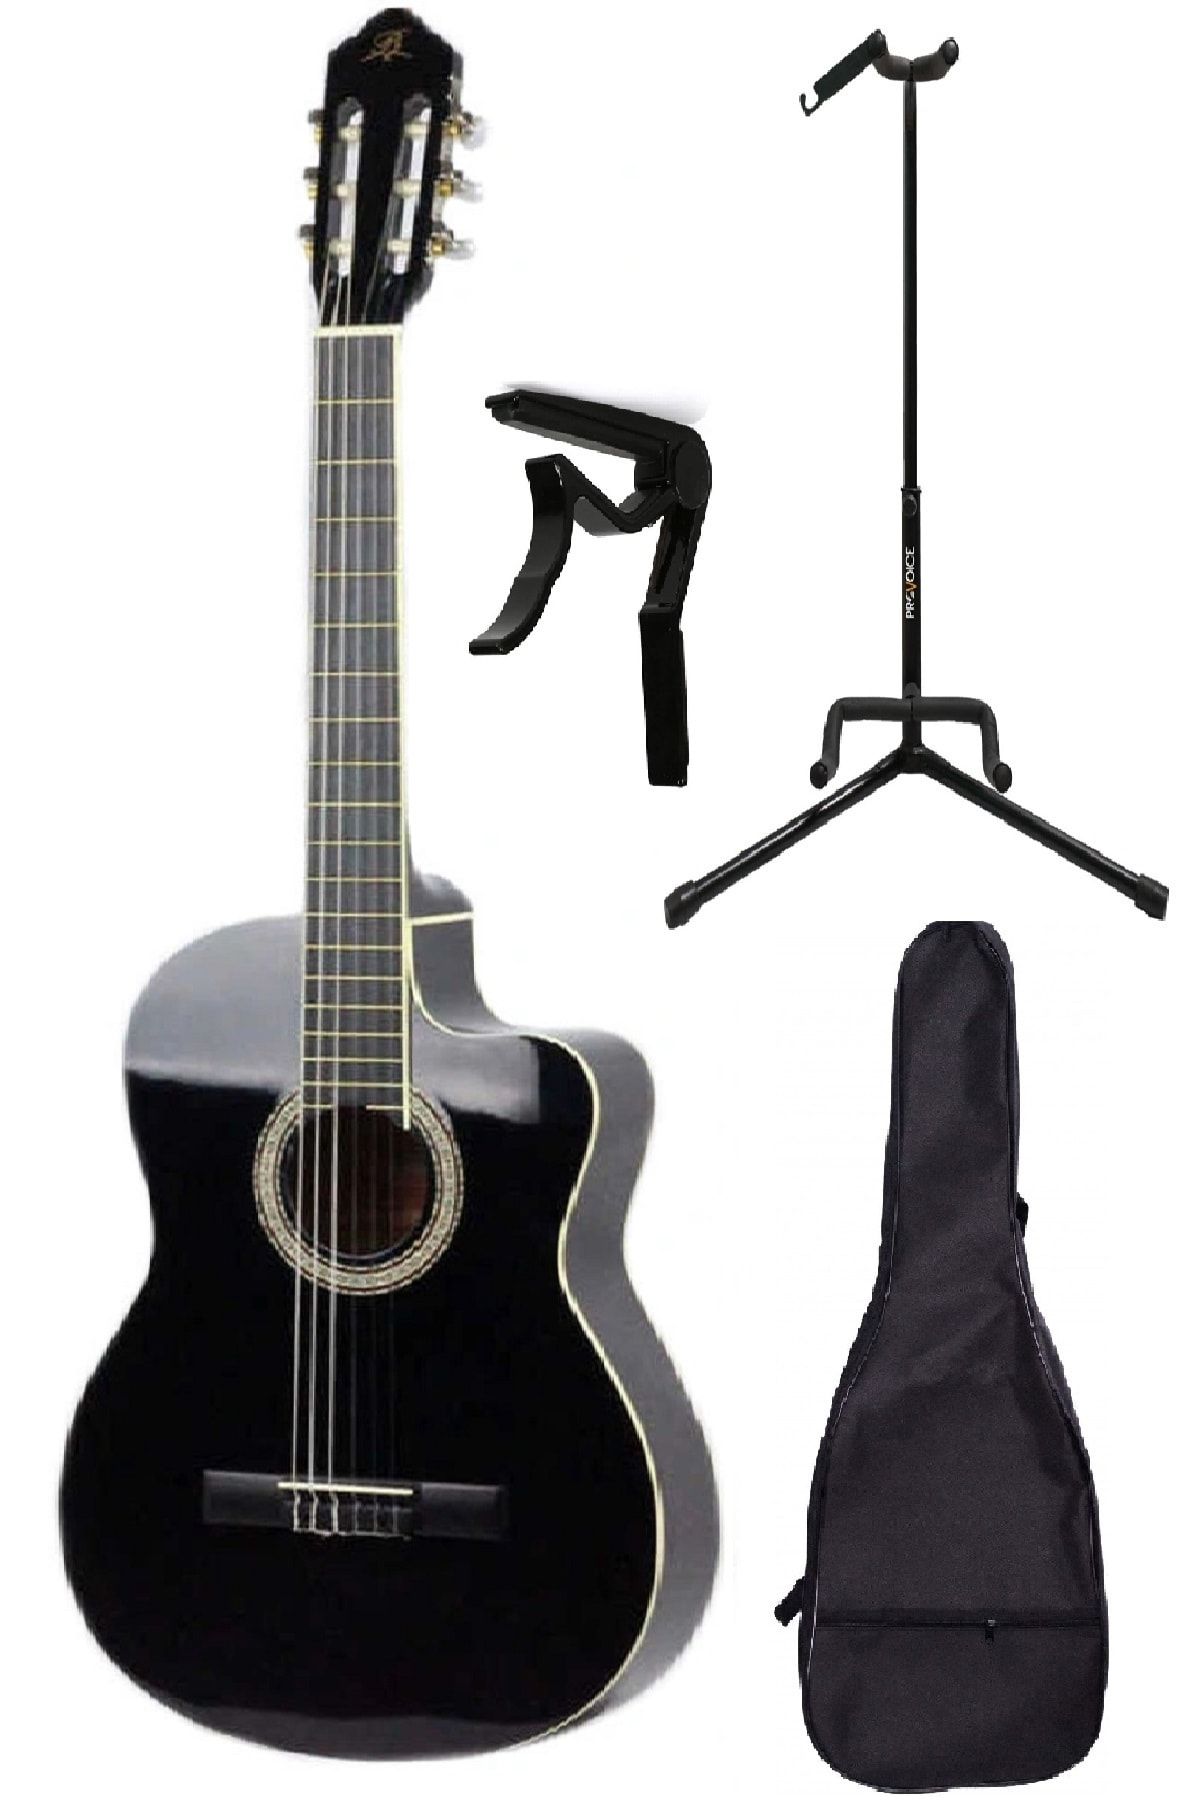 Barcelona Lc 3900 Cbk Paket Siyah Klasik Gitar (stand Kılıf Kapo Hediye)